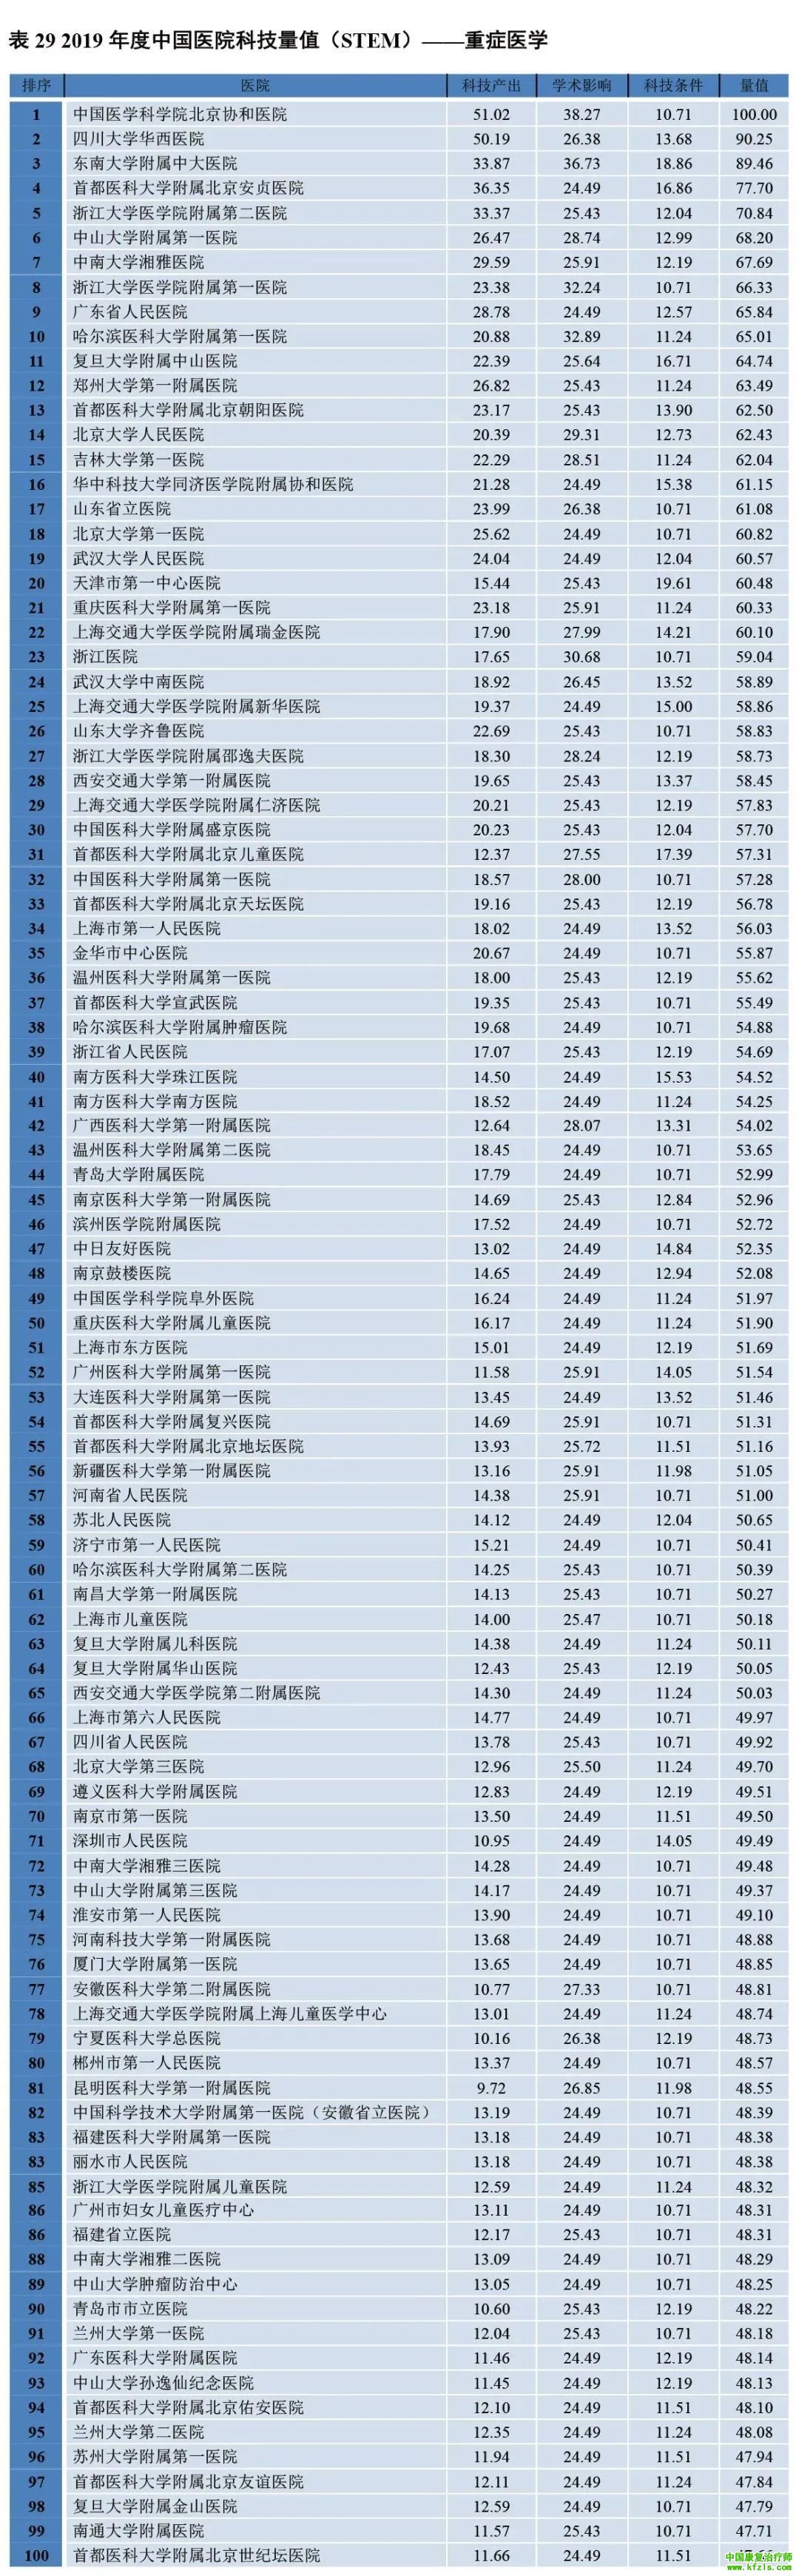 2019年度中国医院科技量值（STEM）综合排名